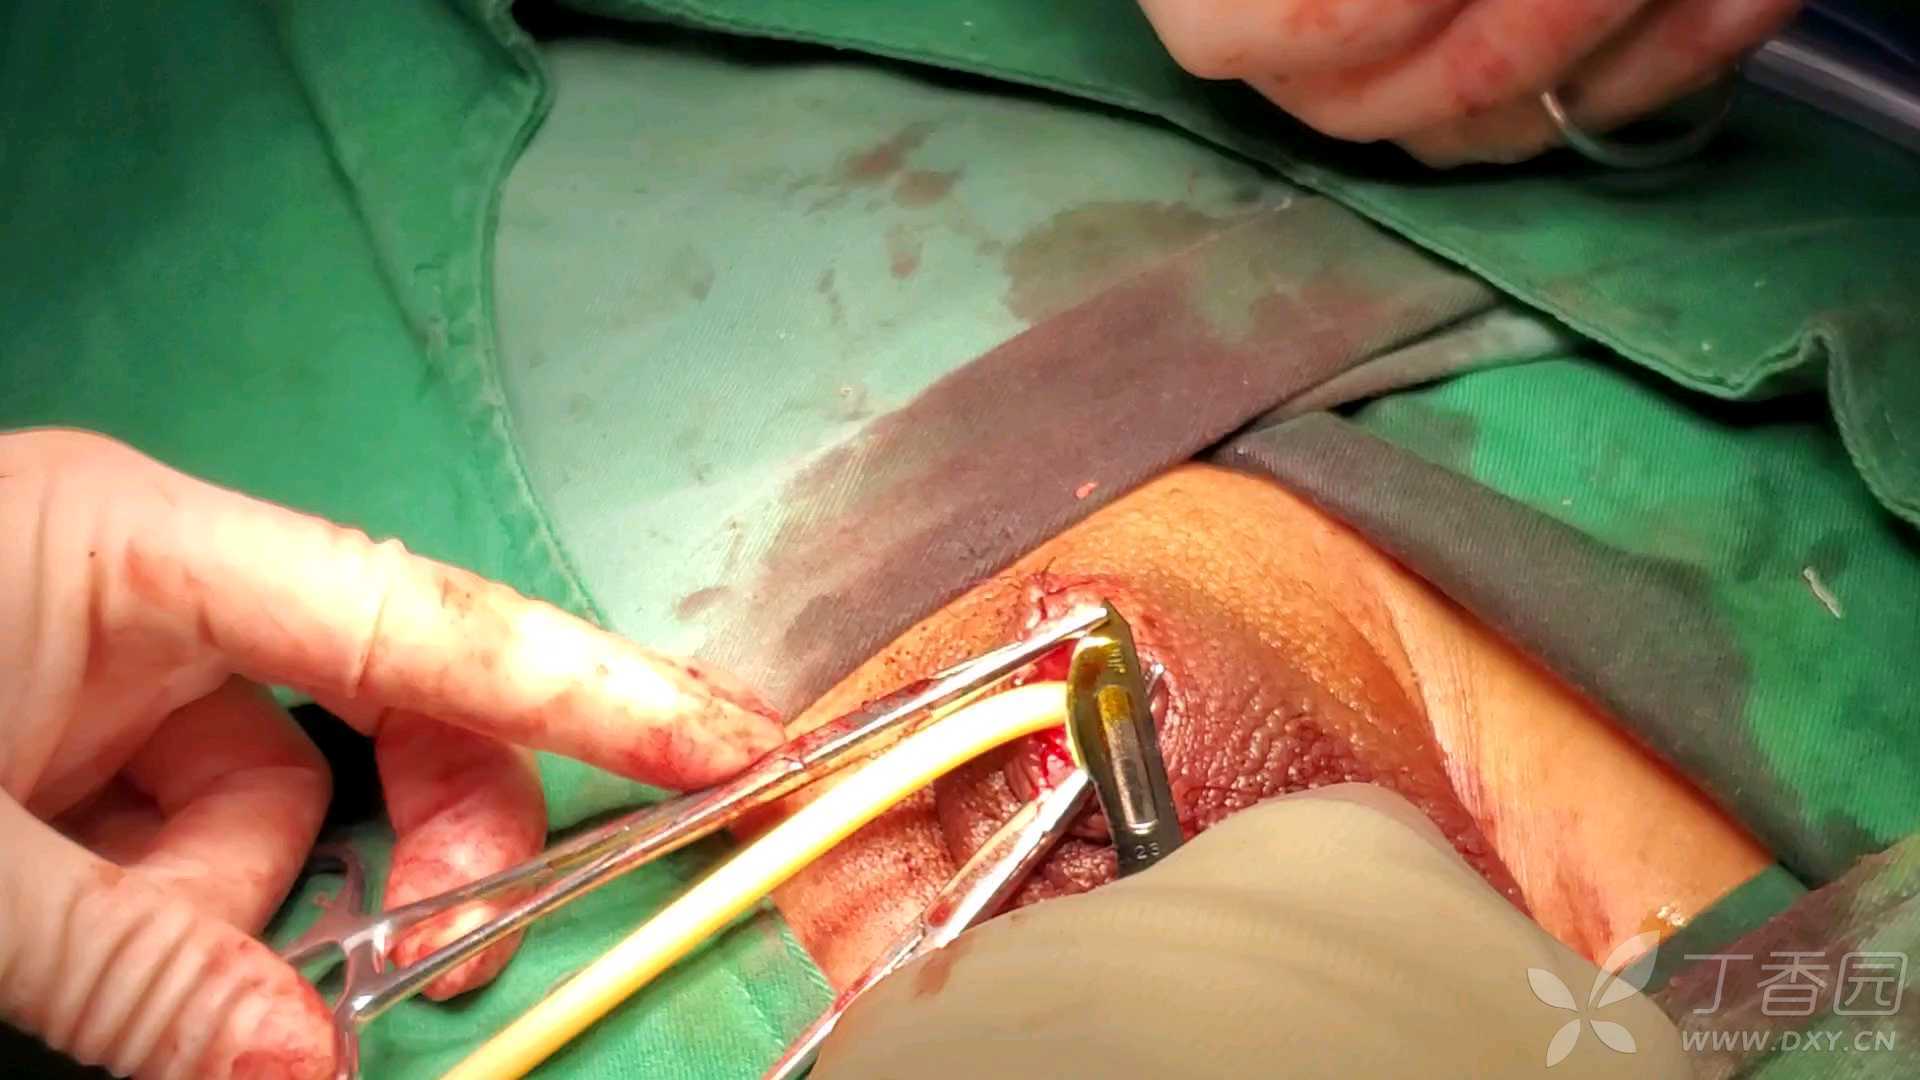 阴茎次全切,尿道造口  手术视频05发布于 2020